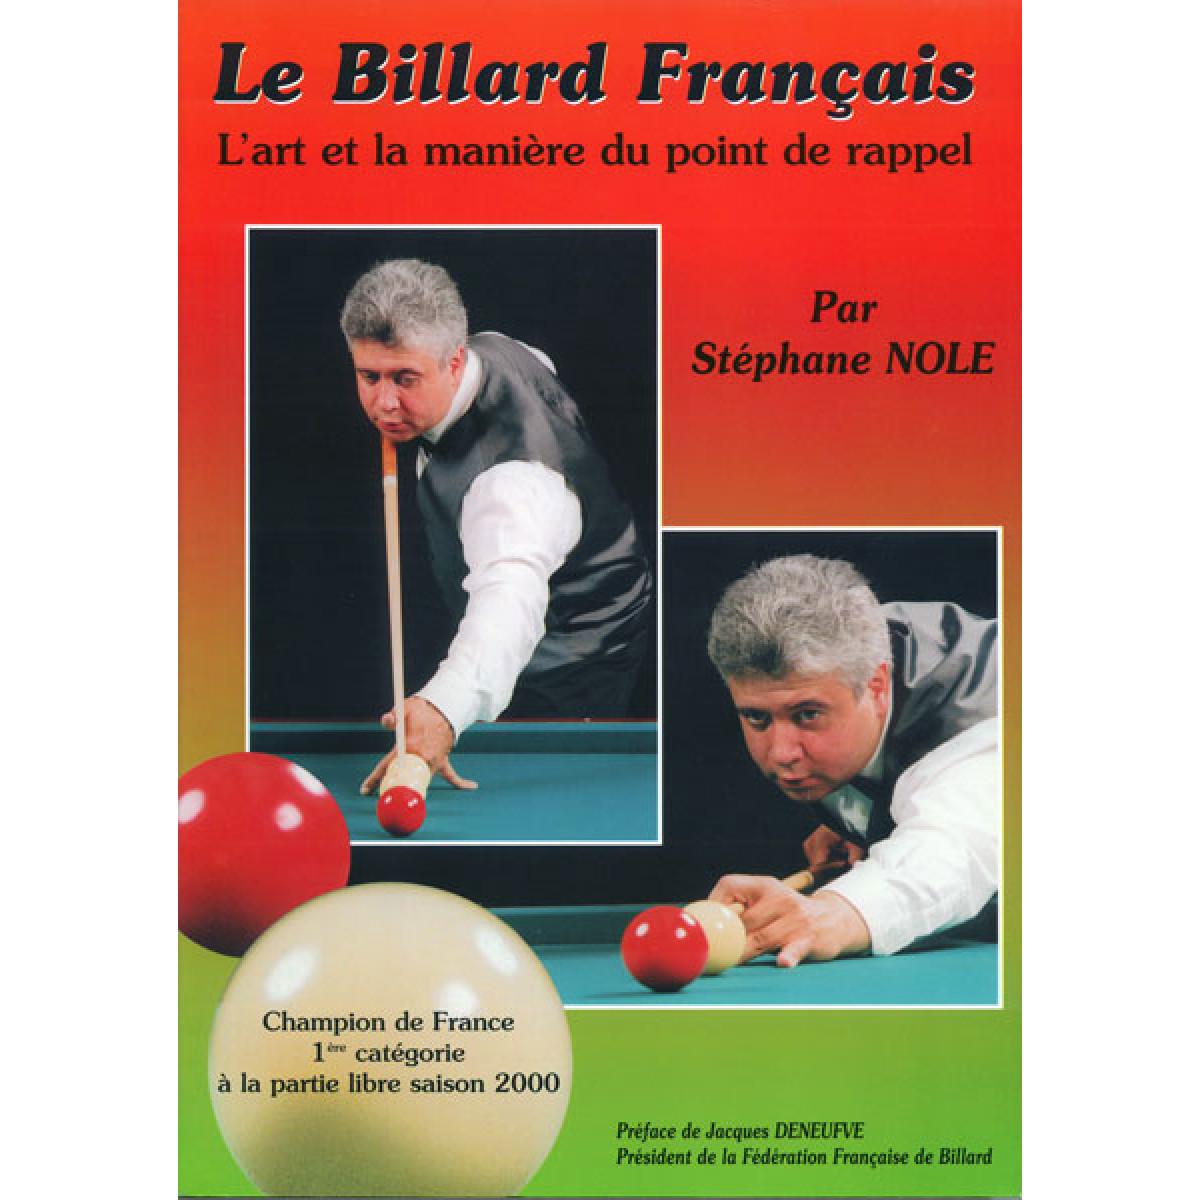 Livre Le Billard Français NOLE kopen op